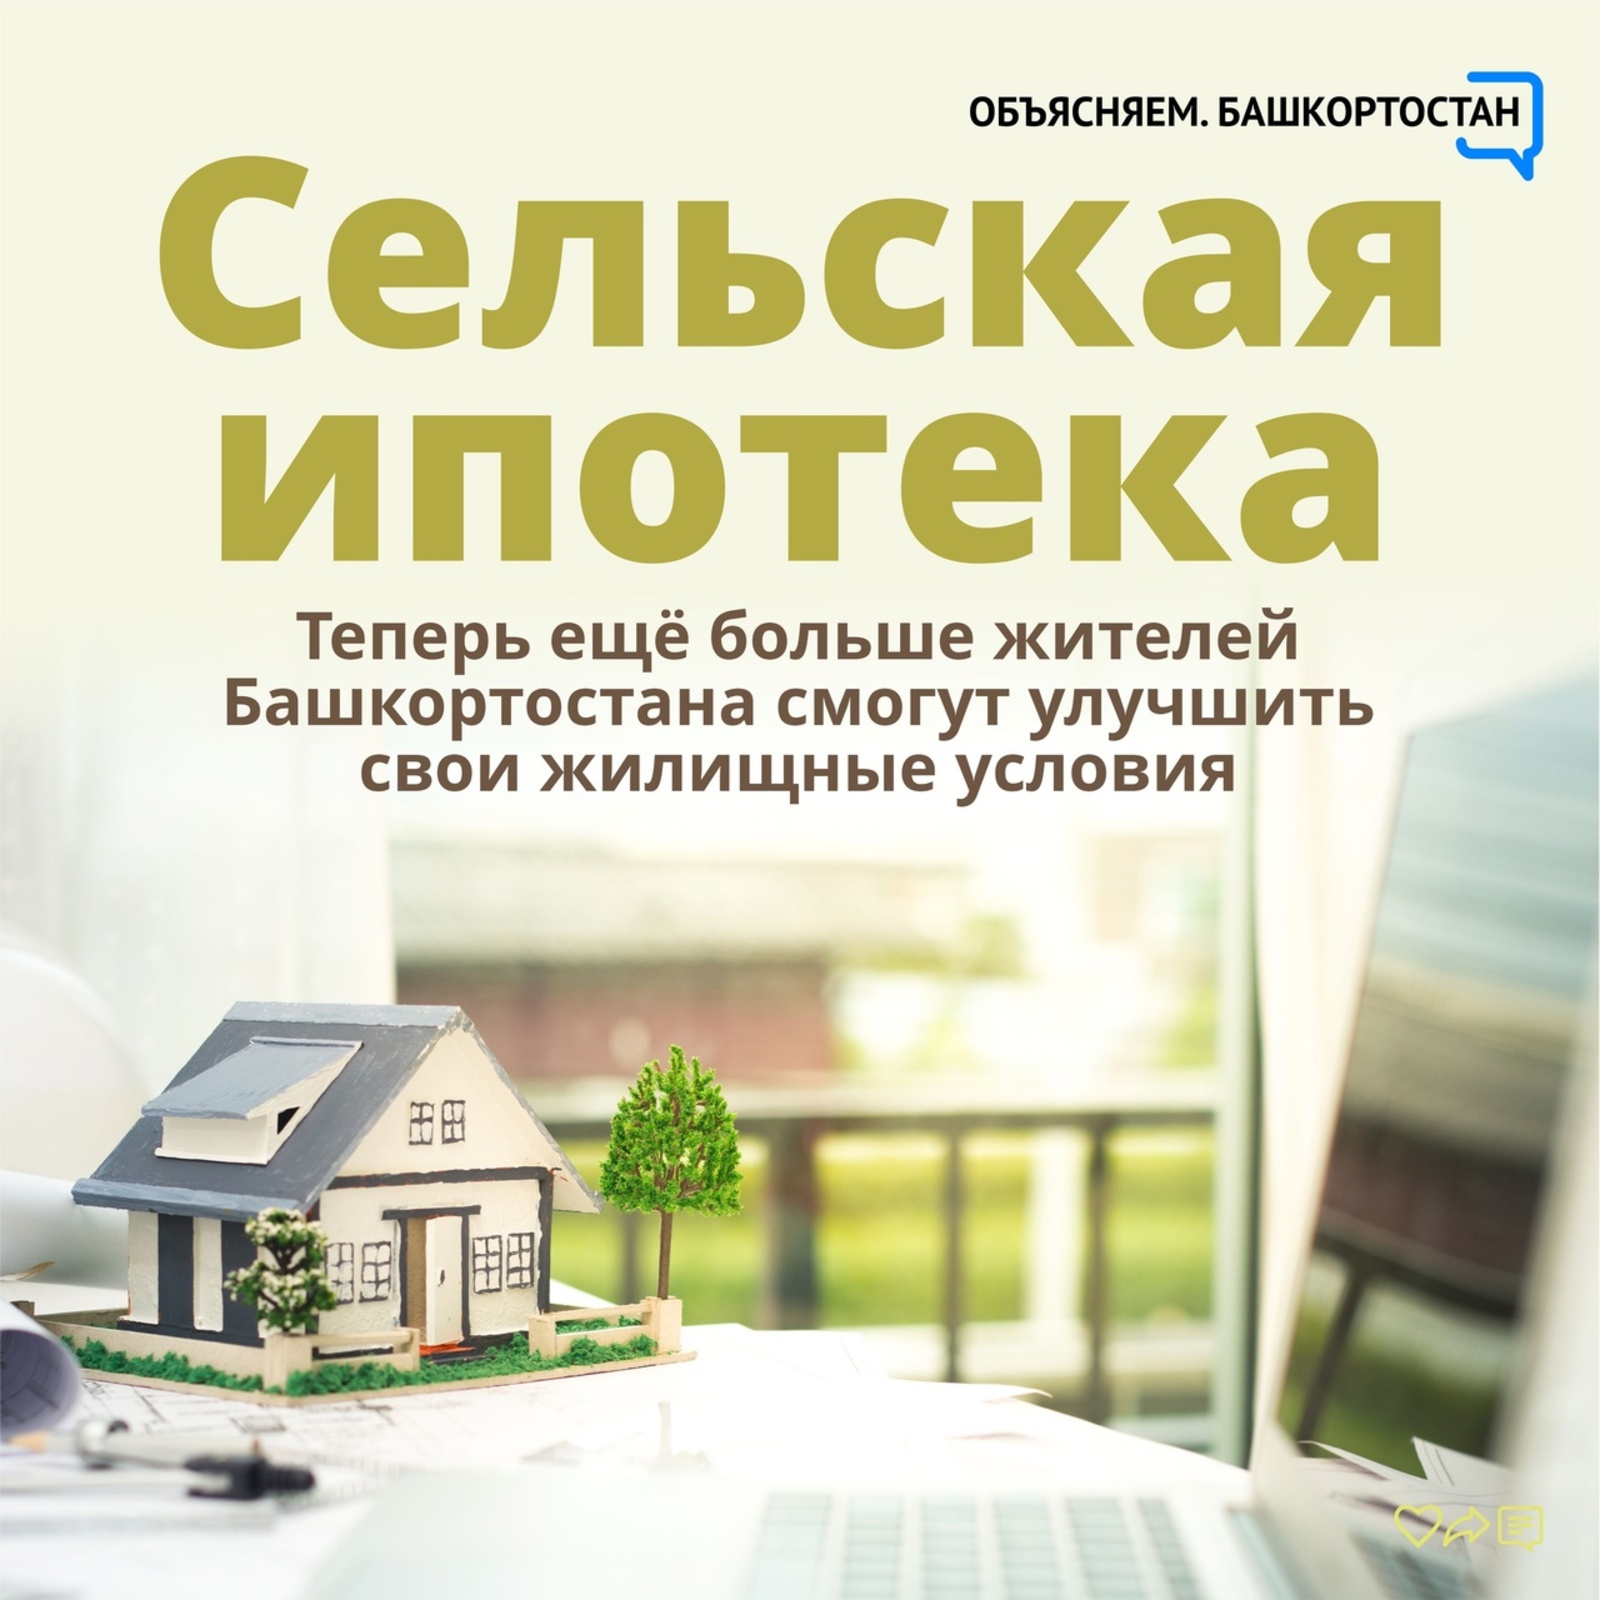 Теперь еще больше жителей Башкортостана смогут улучшить свои жилищные условия